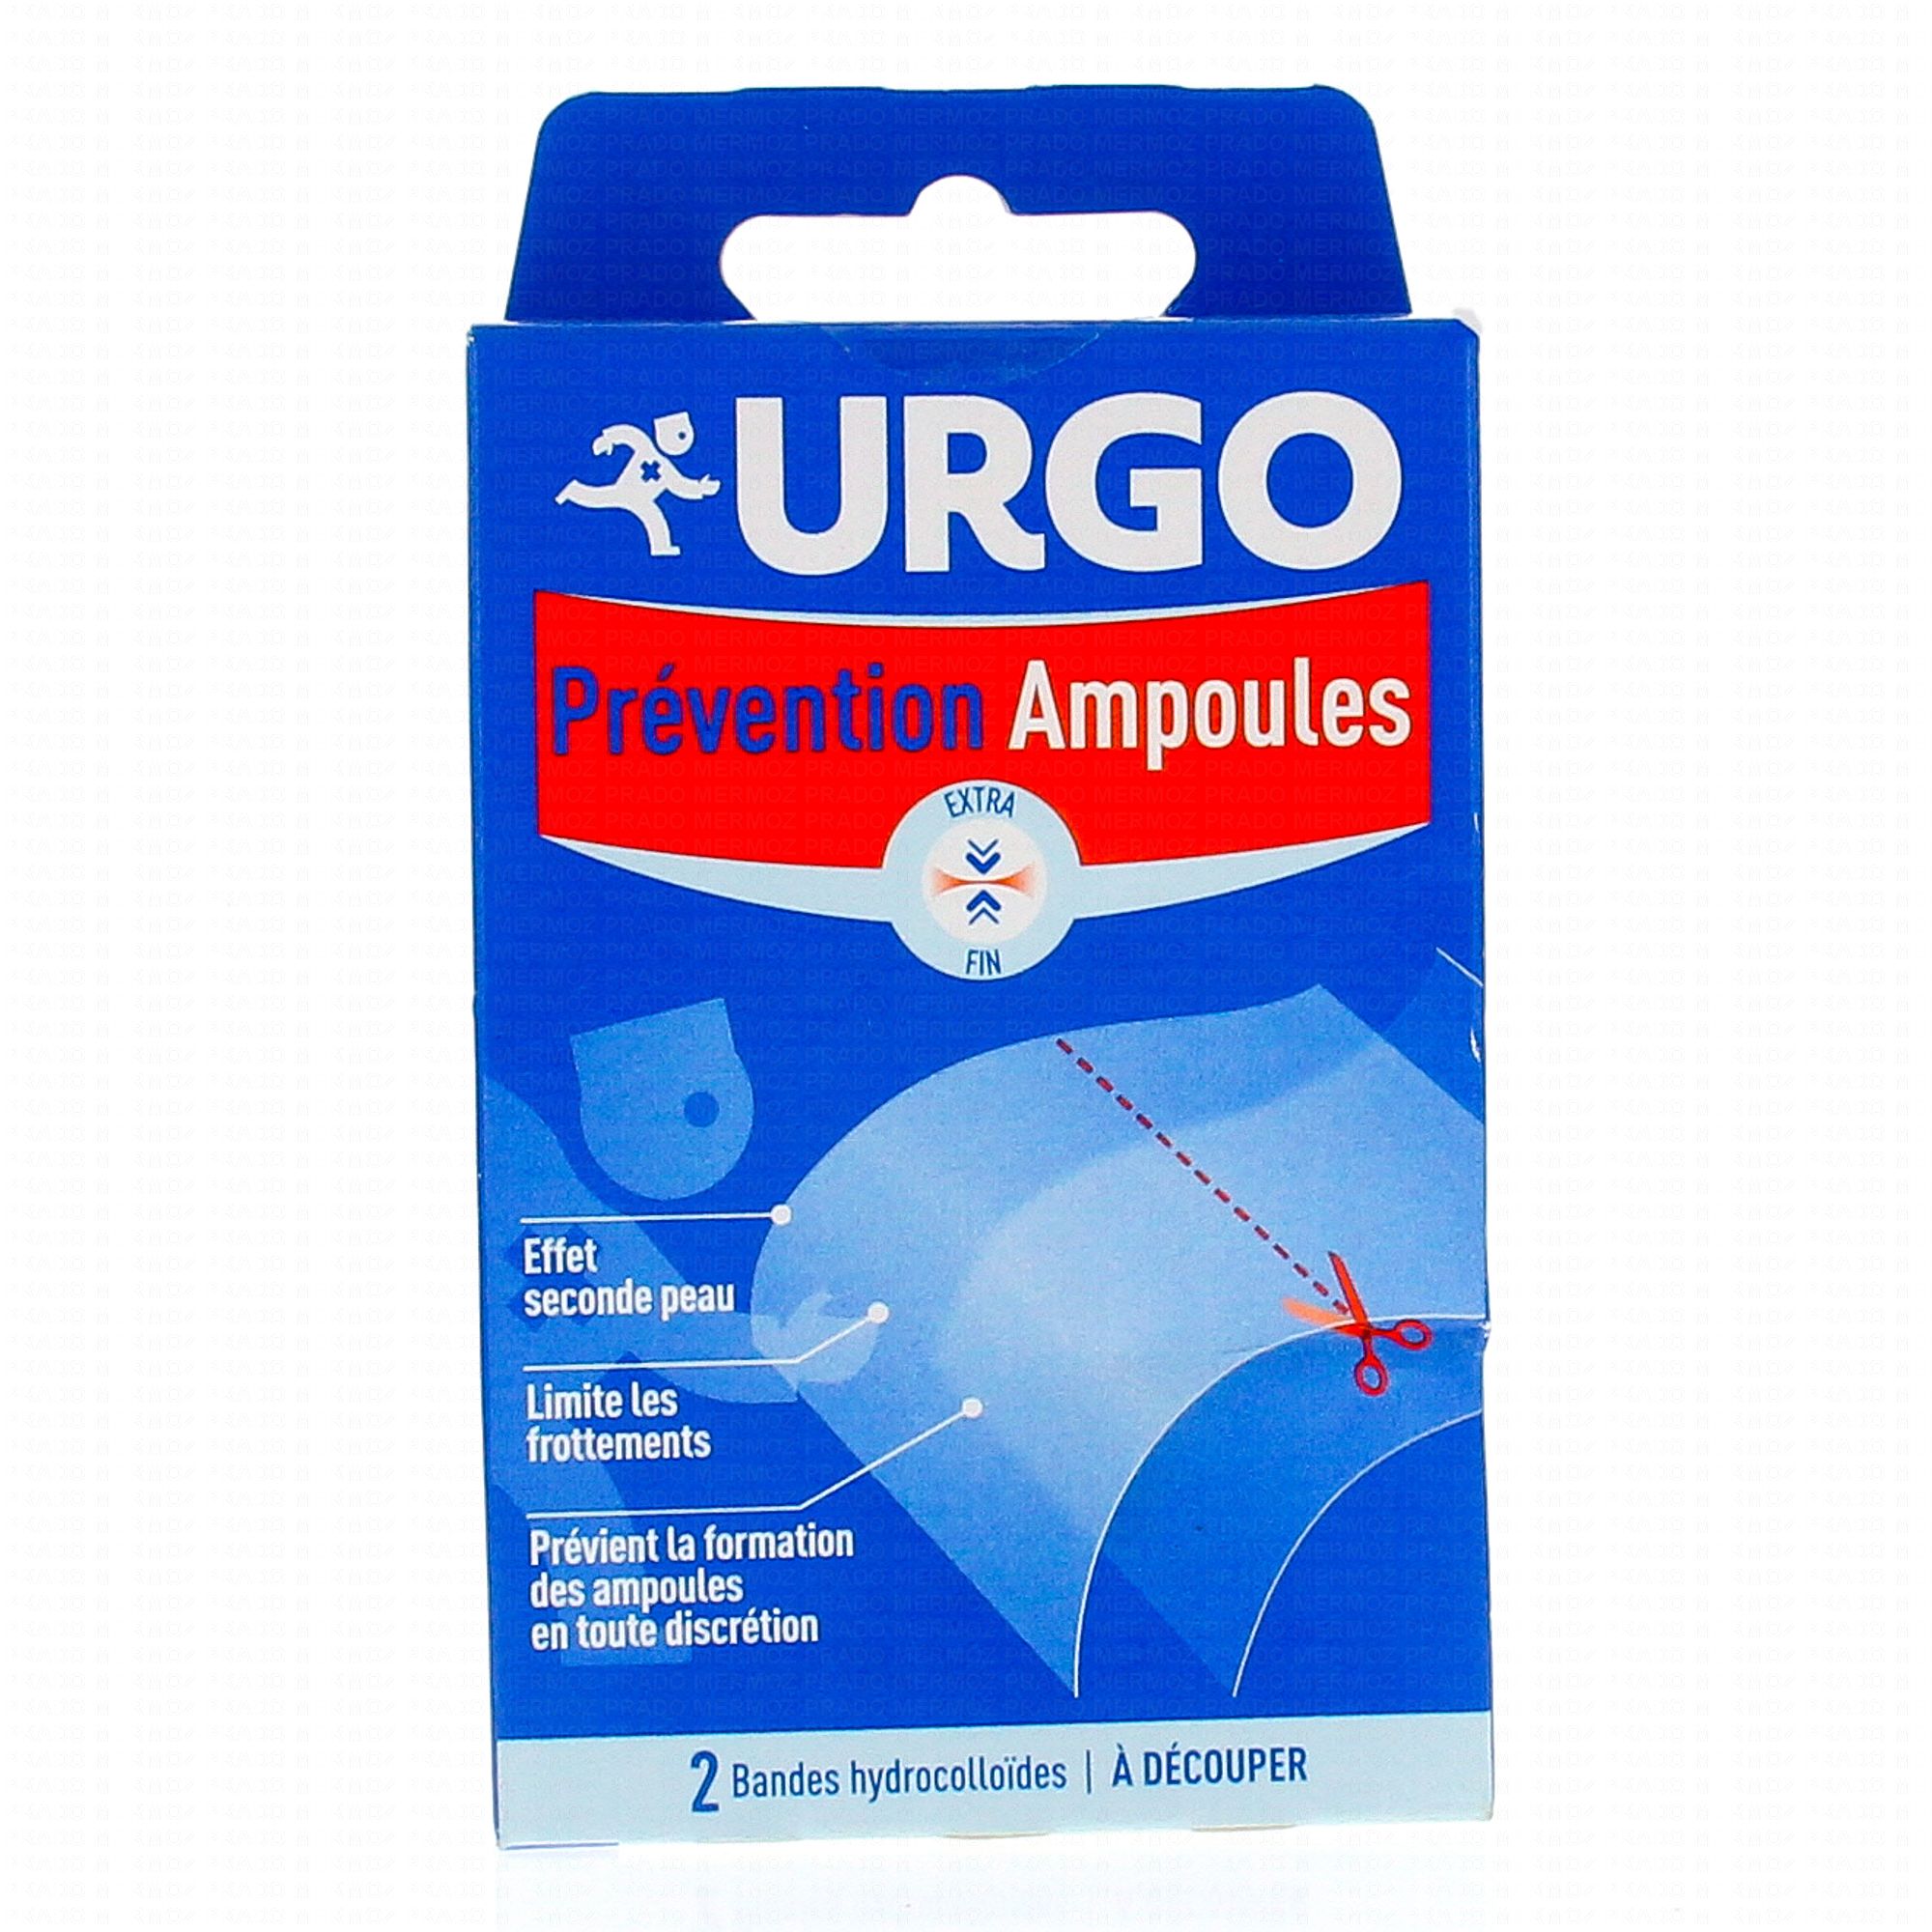 Urgo lance une gamme de gels pour traiter les verrues et les ampoules : le  courrier de la santé 